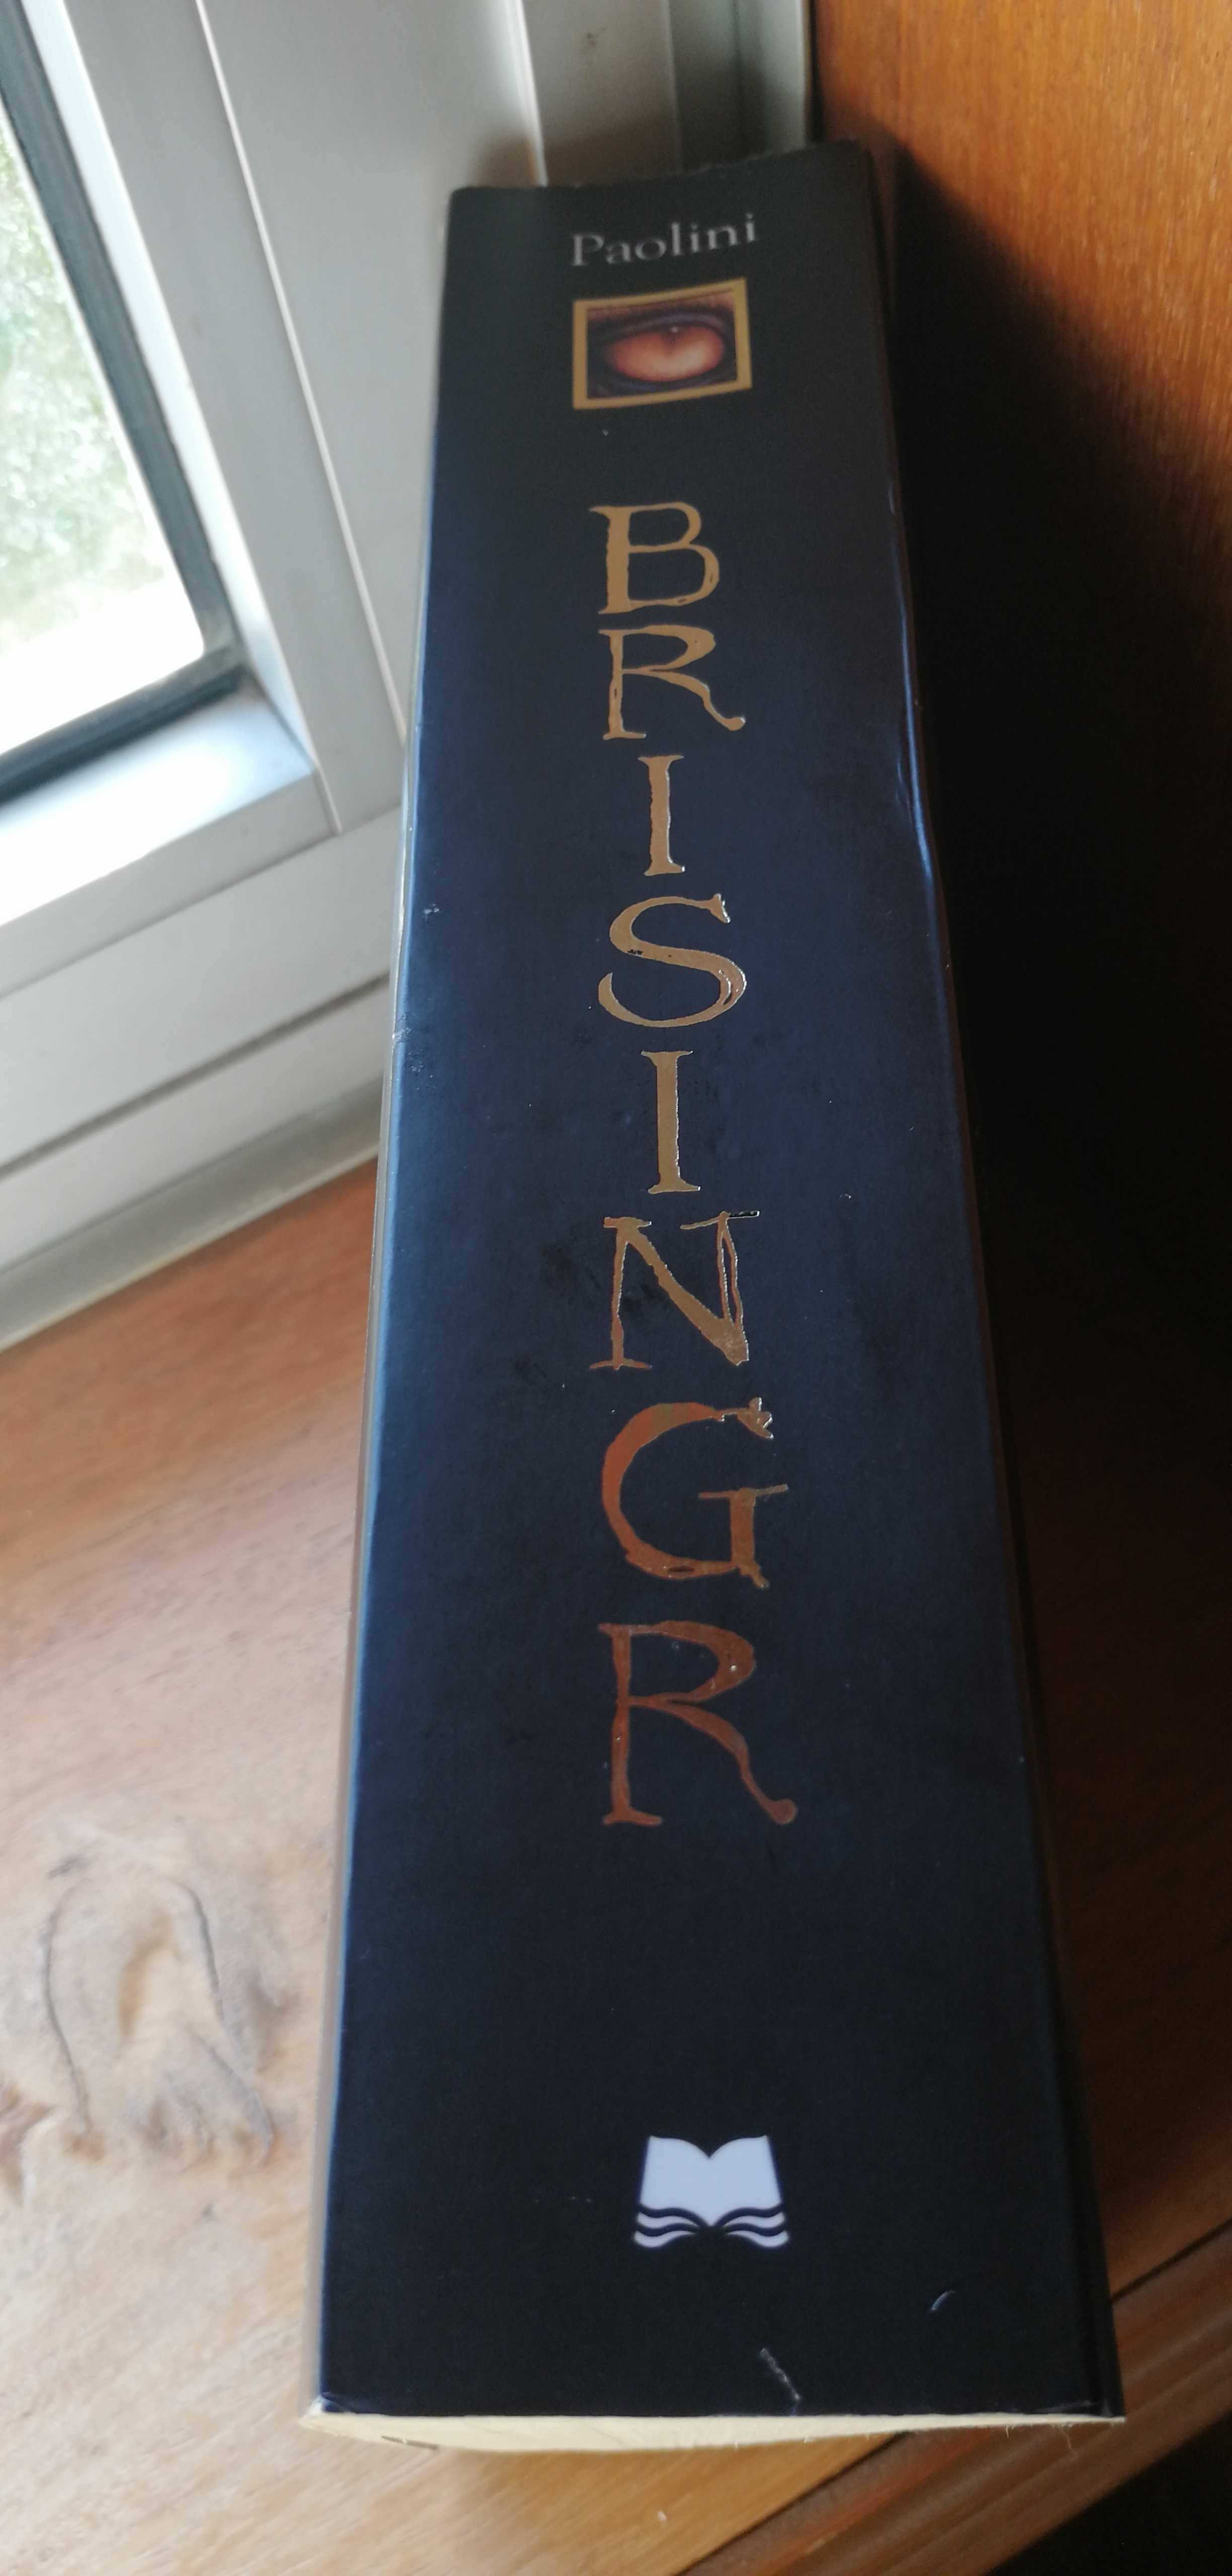 Livro com titulo "Brisingr" de Christopher Paolini